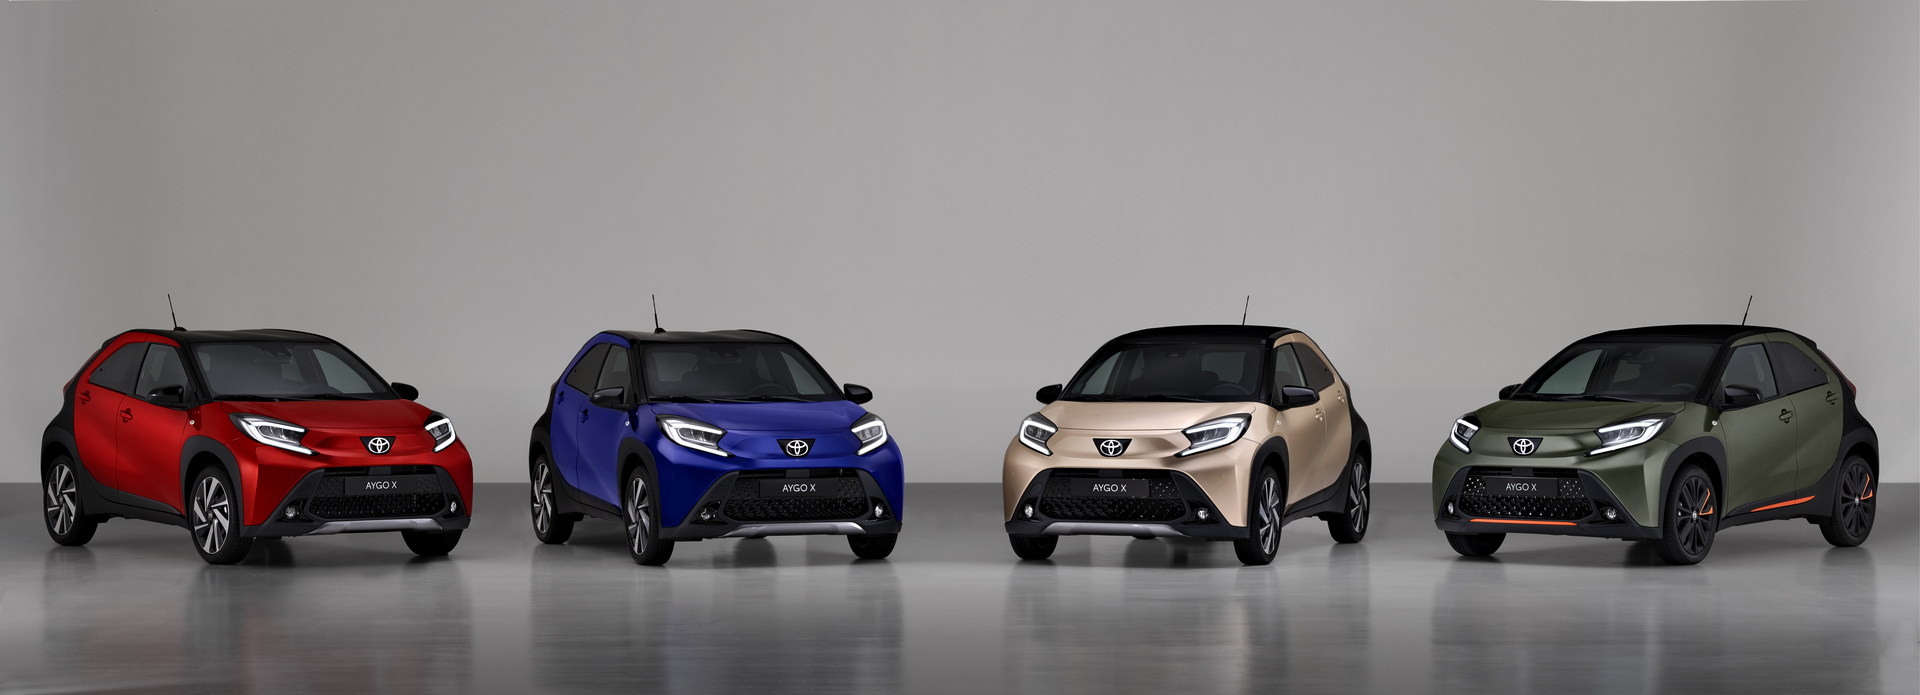 Toyota ra mắt Aygo X – xe đô thị gầm cao hạng A, nhỏ hơn cả Raize - Ảnh 3.